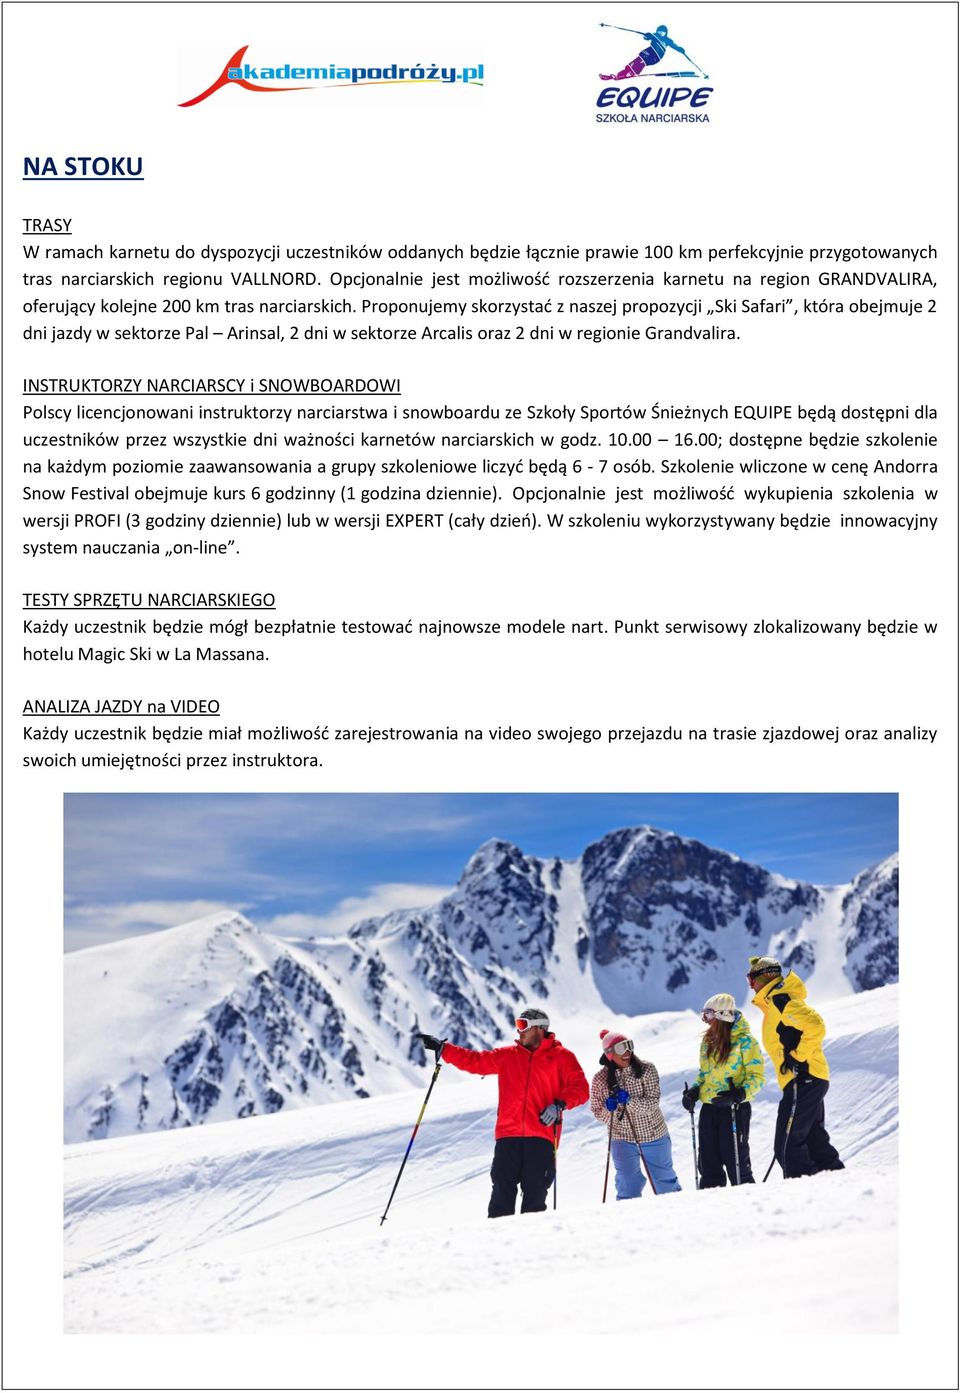 Proponujemy skorzystać z naszej propozycji Ski Safari, która obejmuje 2 dni jazdy w sektorze Pal Arinsal, 2 dni w sektorze Arcalis oraz 2 dni w regionie Grandvalira.